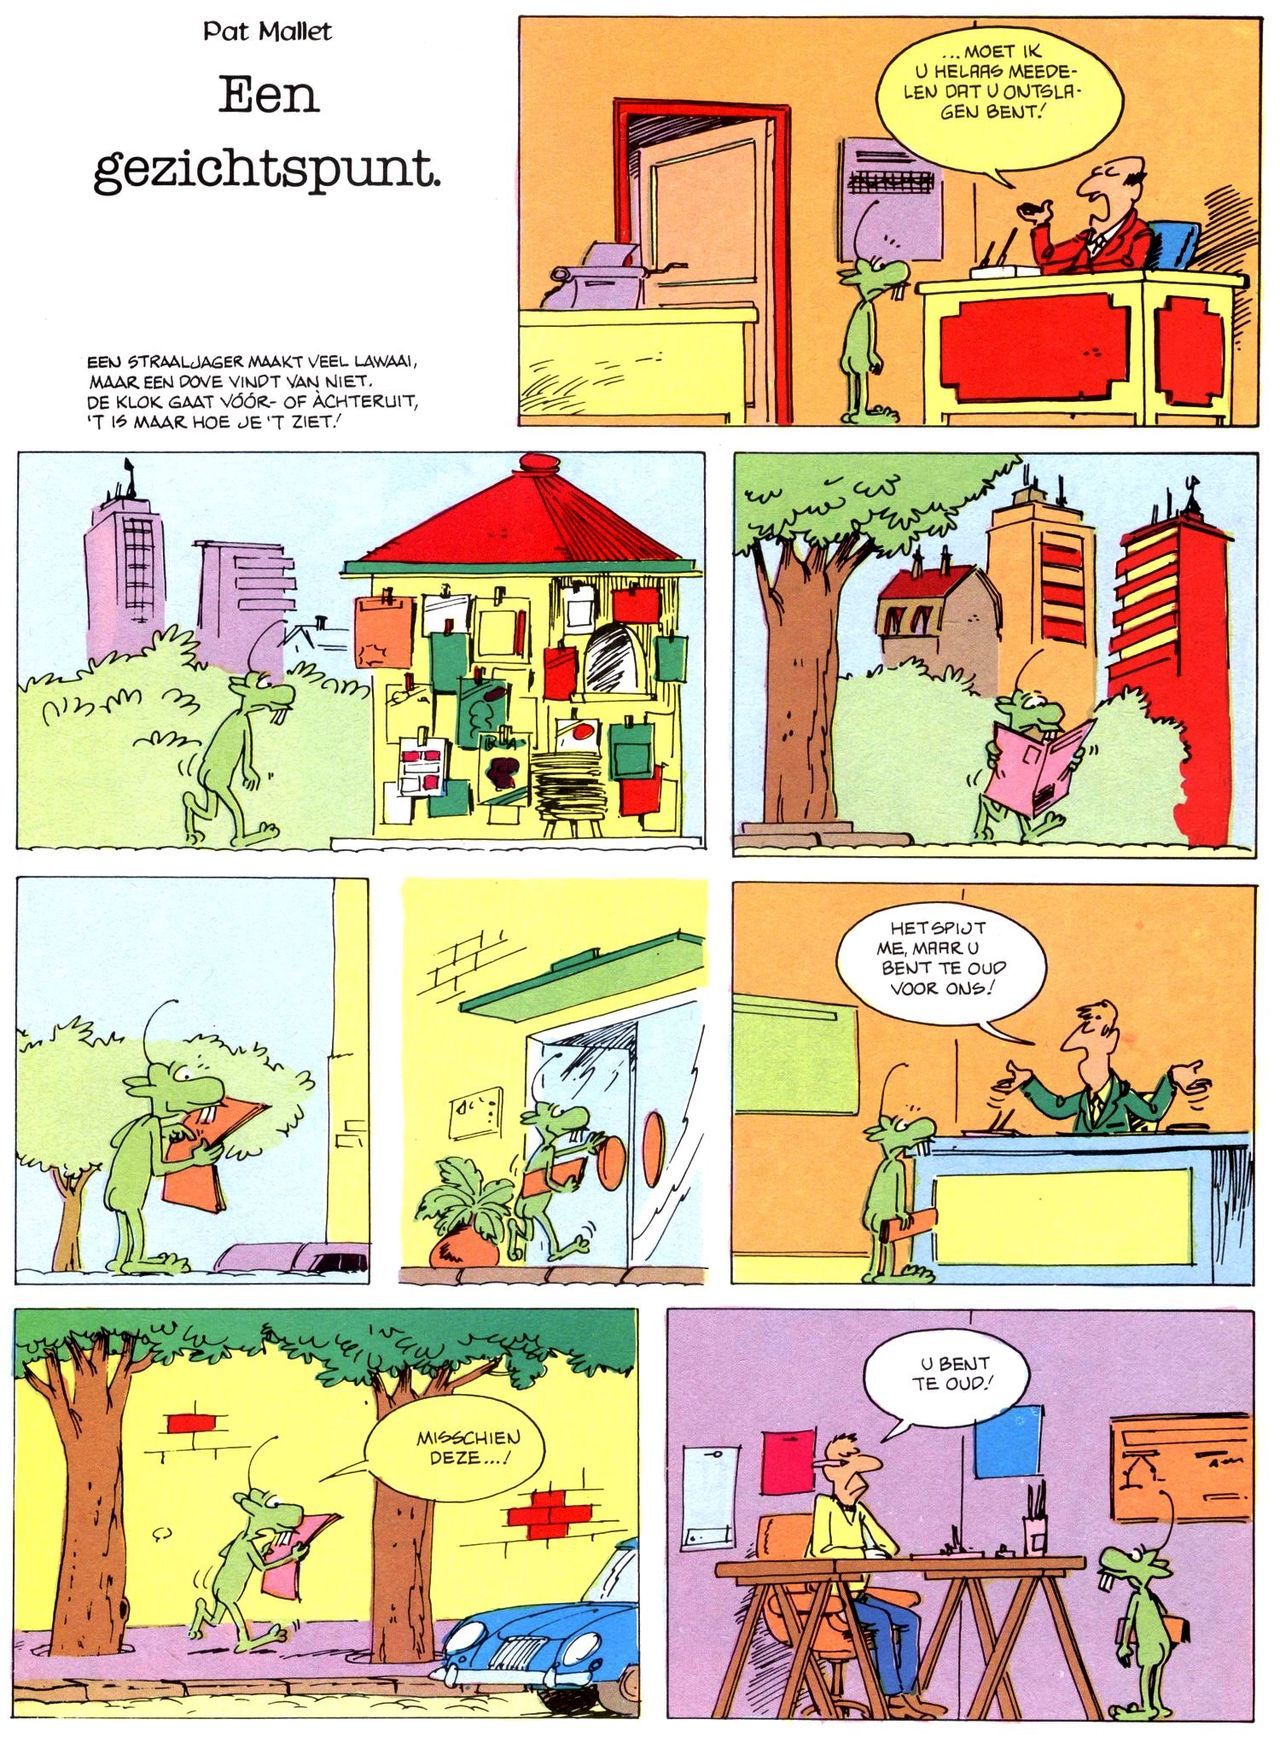 Het Is Groen En Het.. - 02 - Verboden Op Het Gras Te Lopen (Dutch) Een oude humoristische serie van Pat Mallet 43